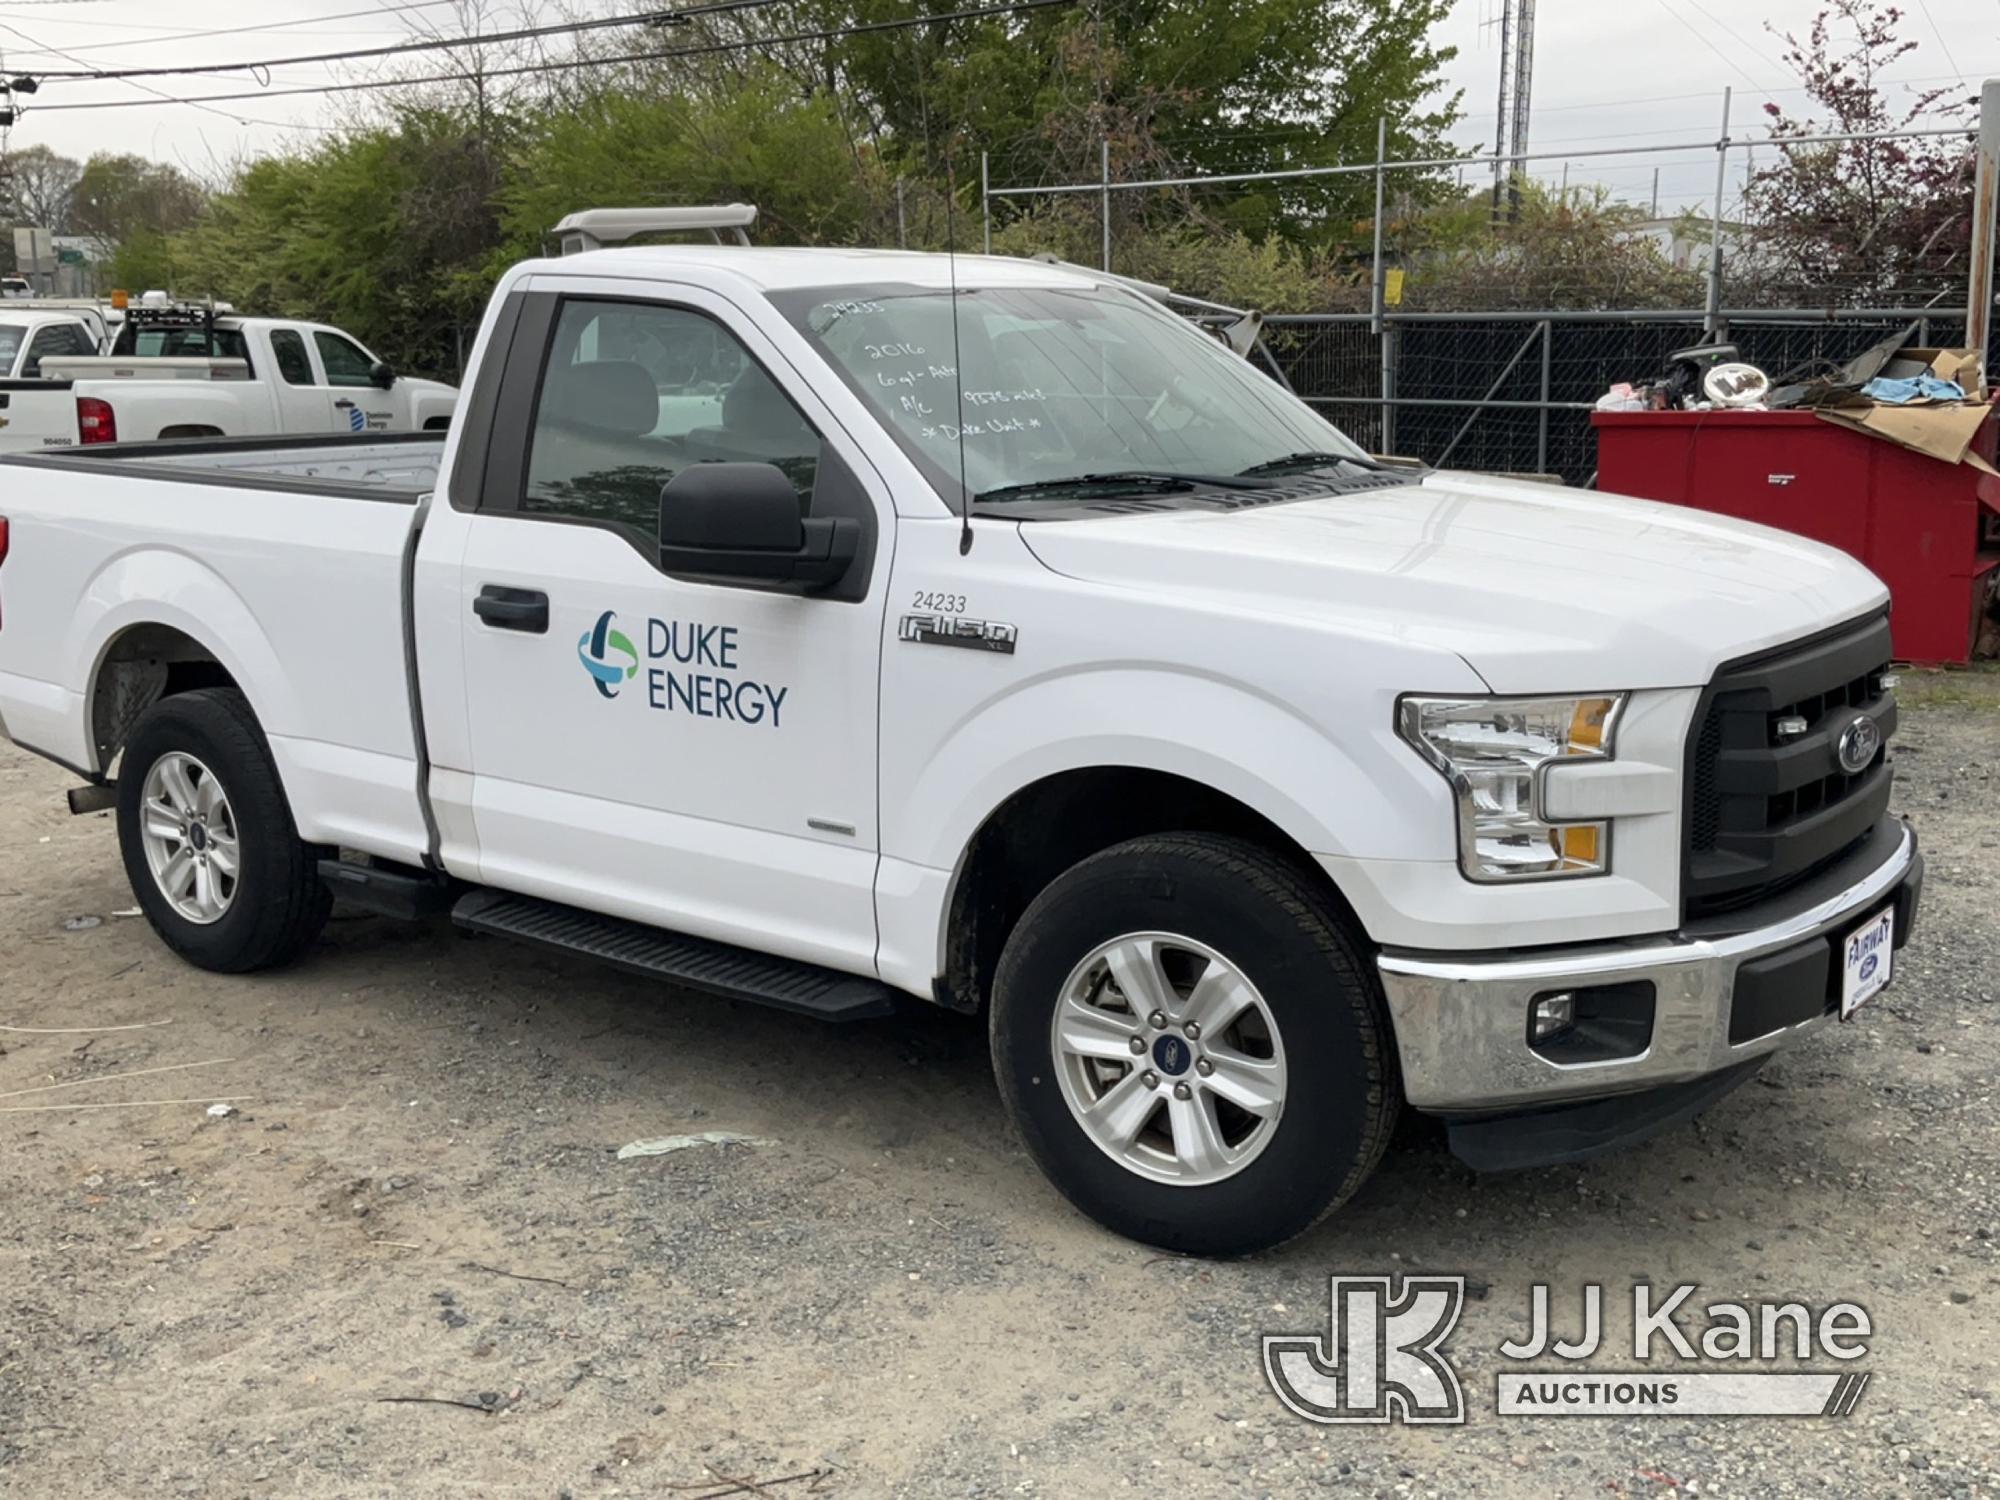 (Charlotte, NC) 2016 Ford F150 Pickup Truck Duke Unit) (Runs & Moves) (Paint Damage